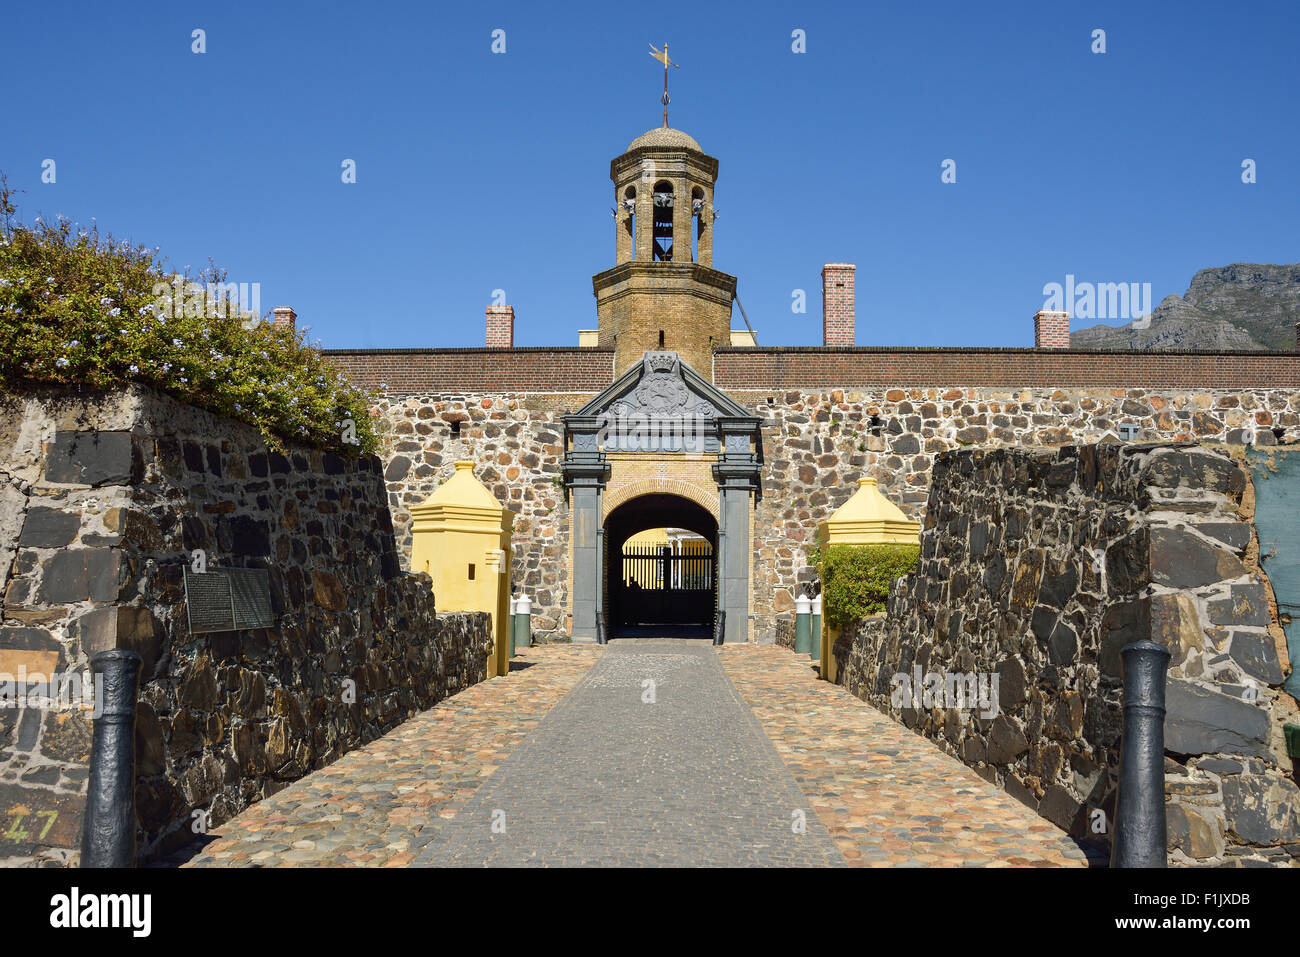 Castello di Buona Speranza (Kasteel die Goeie Hoop), Buitenkant Street, Città del Capo, Provincia del Capo occidentale, Repubblica del Sud Africa Foto Stock